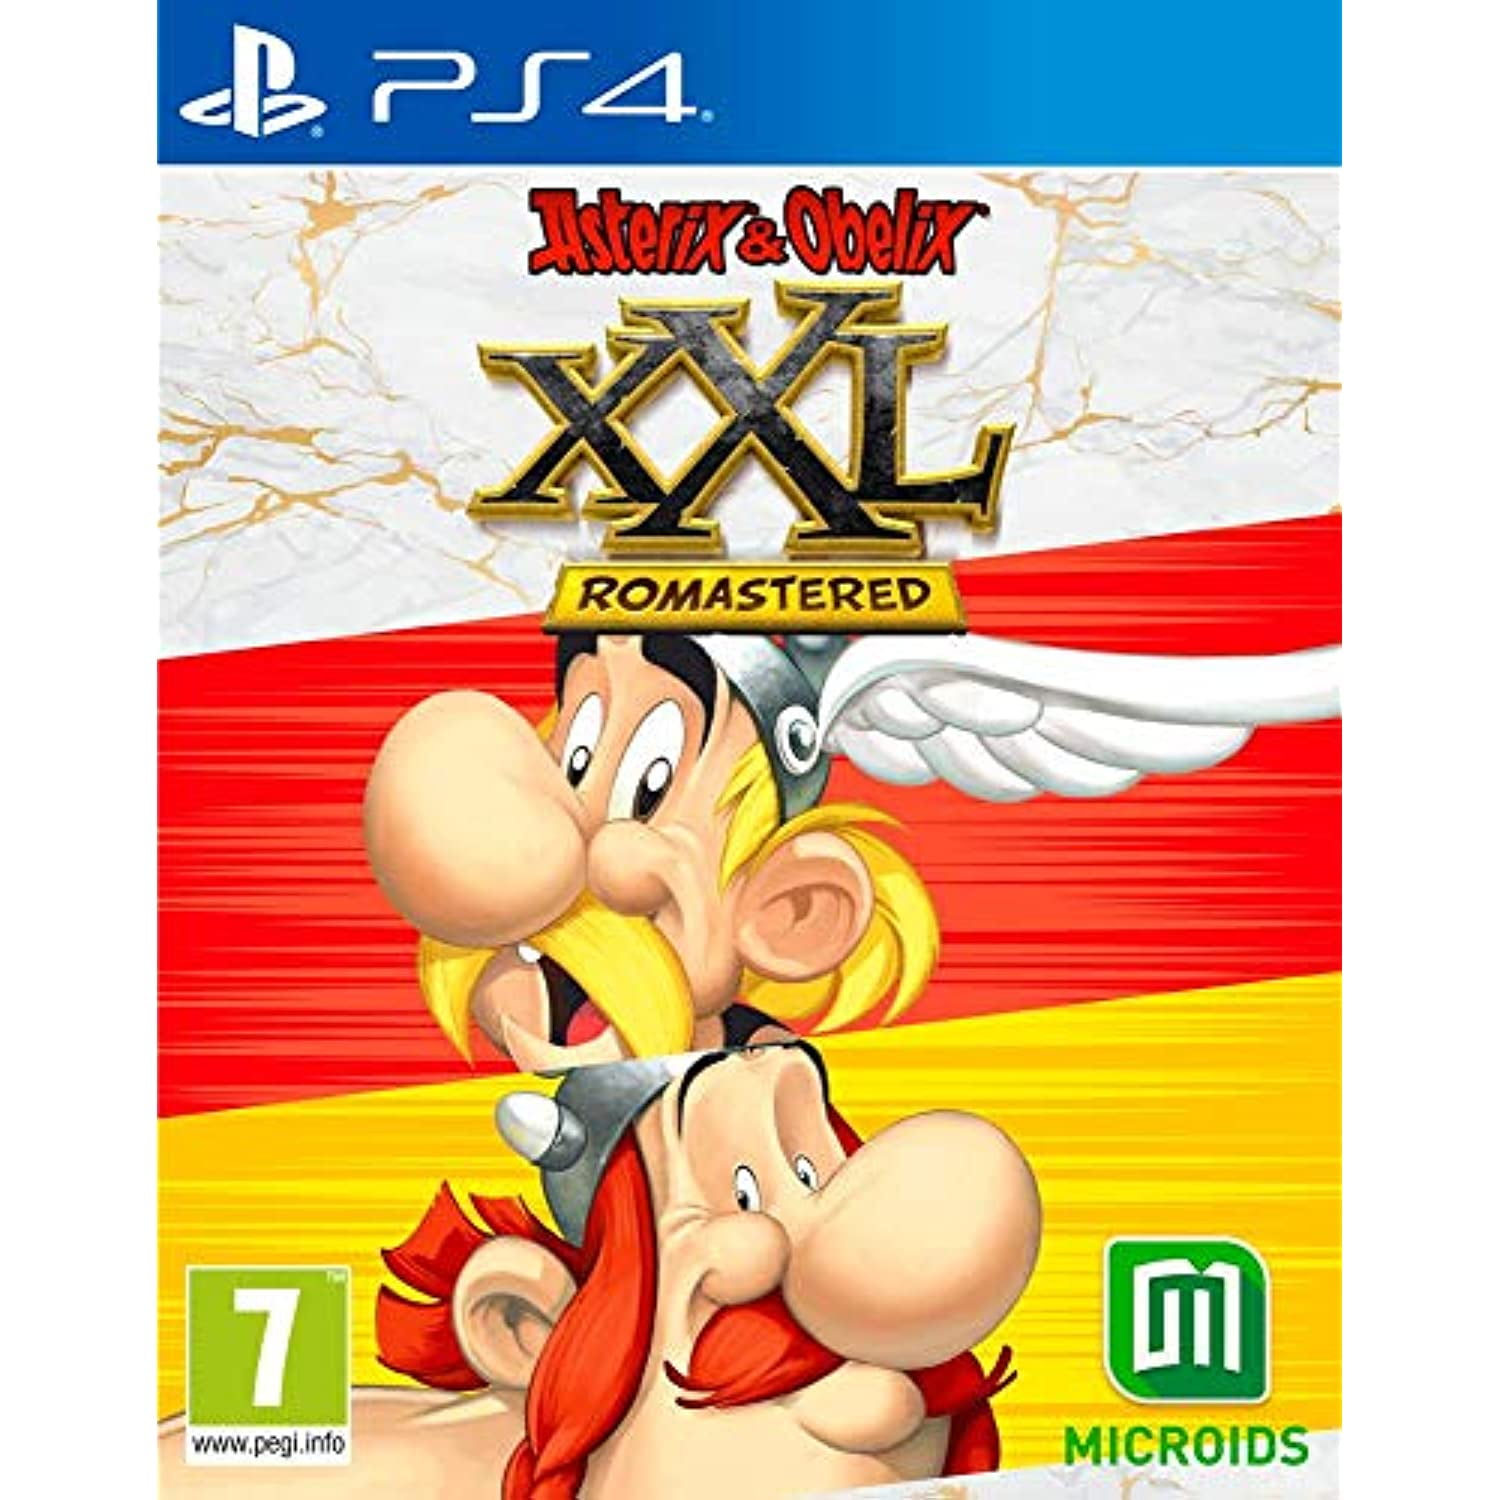 & Obelix Xxl Romastered (Ps4) - Walmart.com